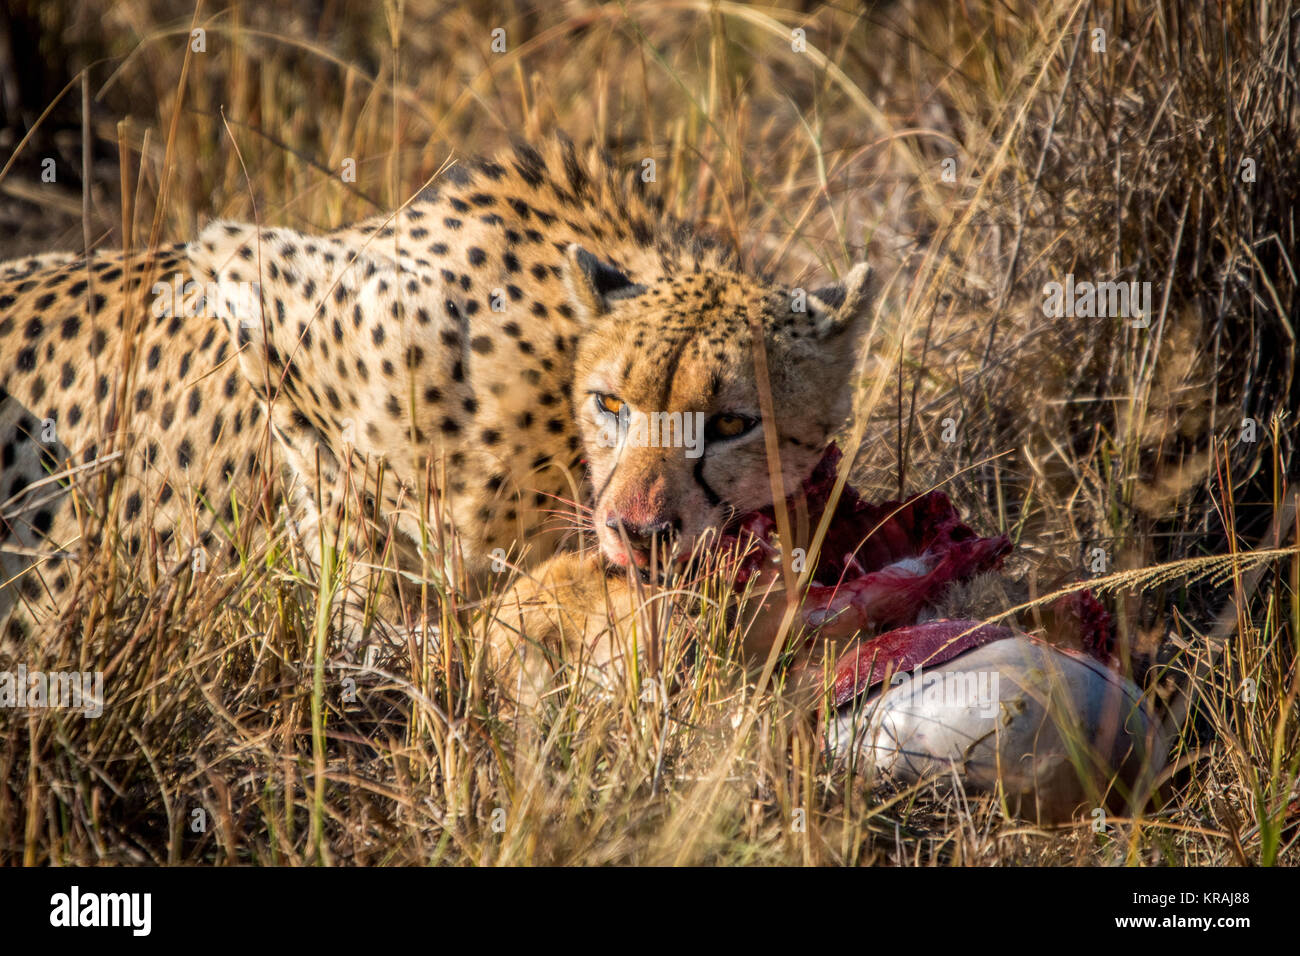 Reedbuck Cheetah comer de un cadáver en la hierba. Foto de stock